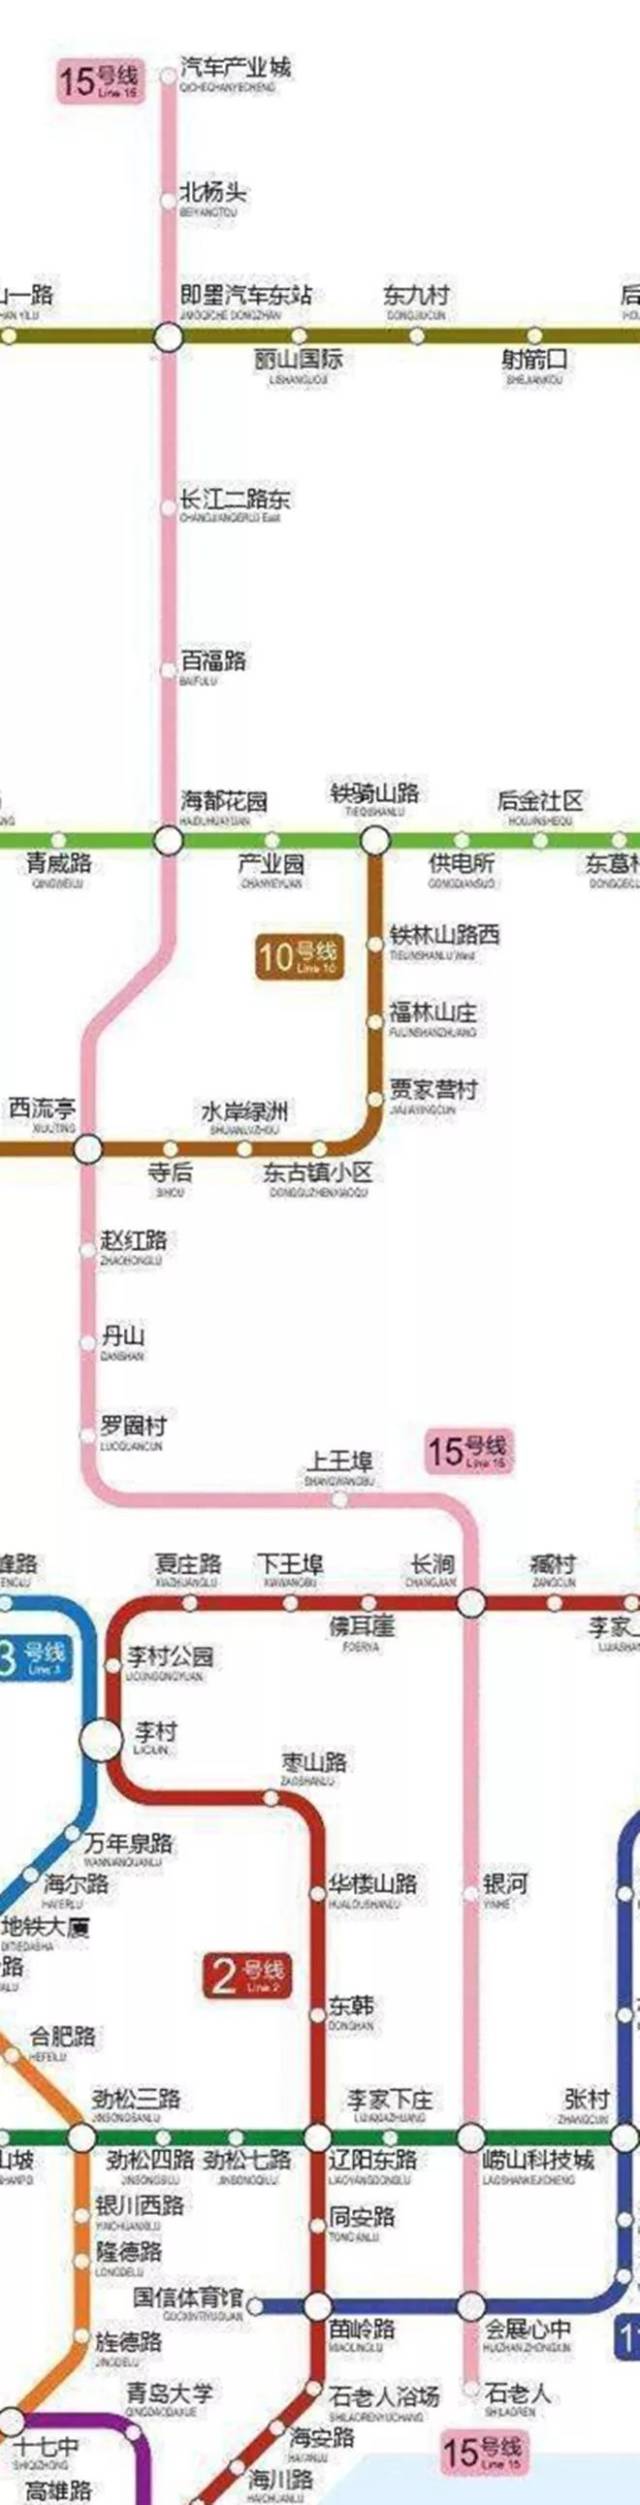 青岛地铁15号线将向北延伸至莱西!